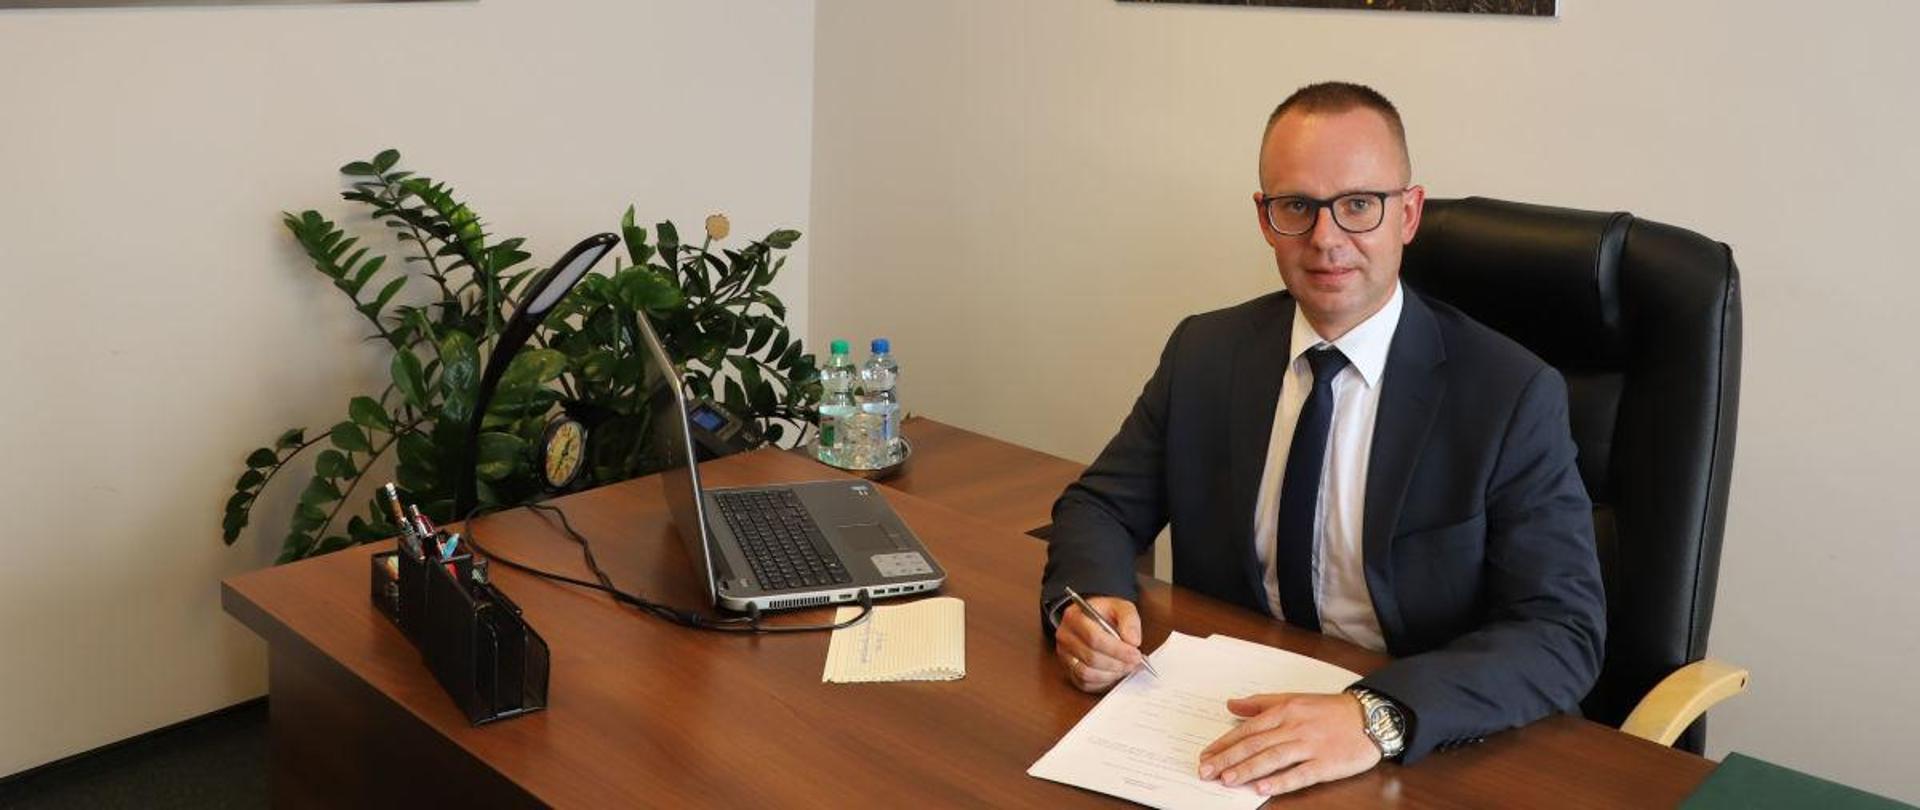 Pan Szymon Kosmalski, Regionalny Dyrektor Ochrony Środowiska w Bydgoszczy przy biurku w swoim gabinecie